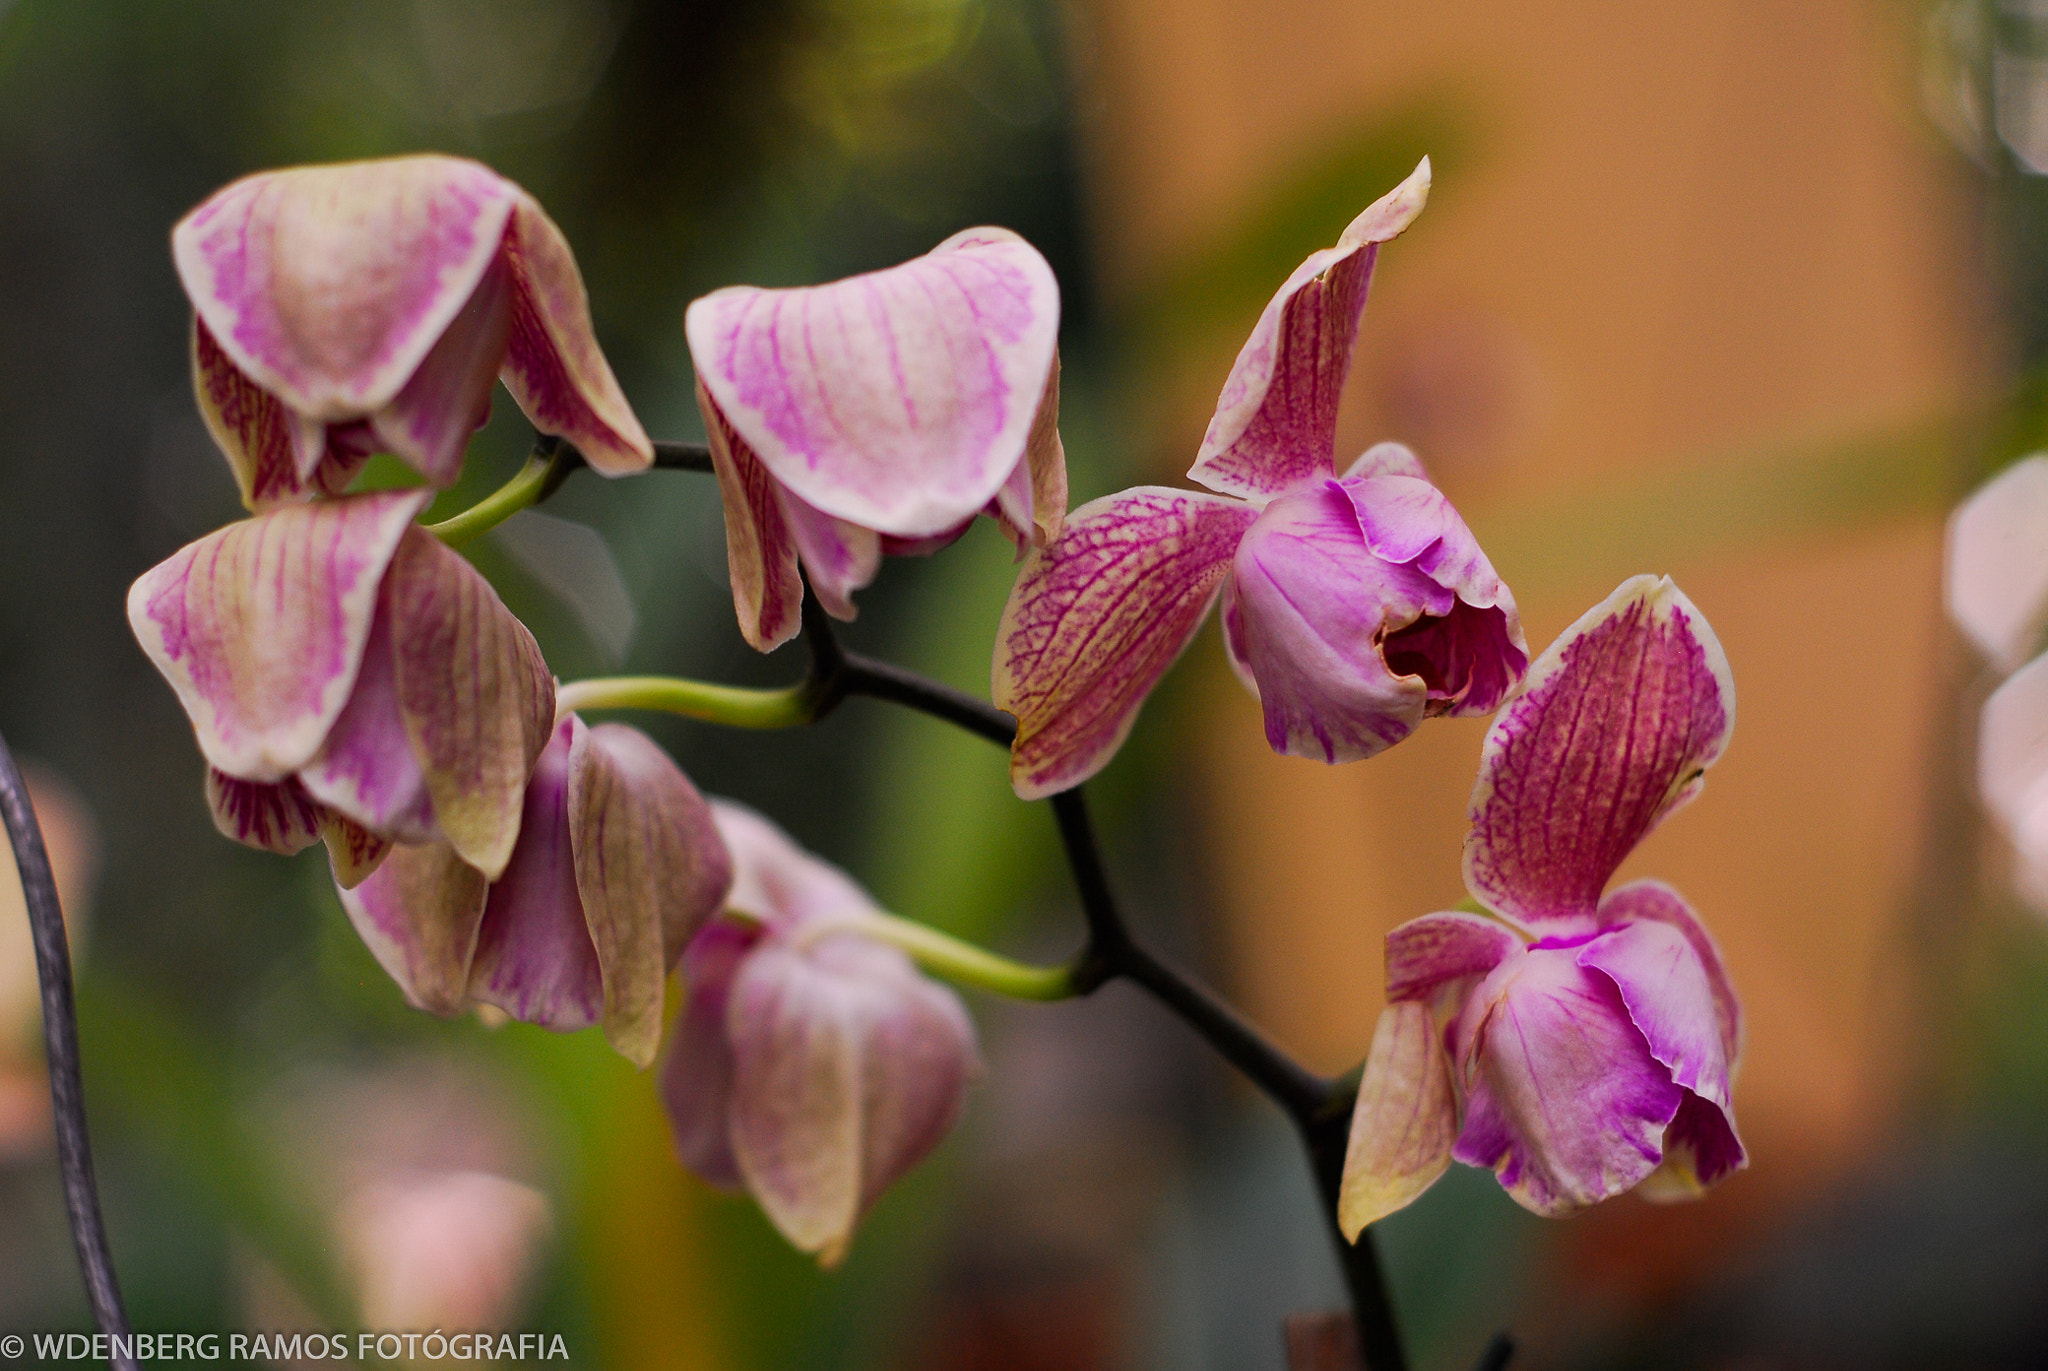 AF Nikkor 50mm f/1.8 N sample photo. Orquídeas photography